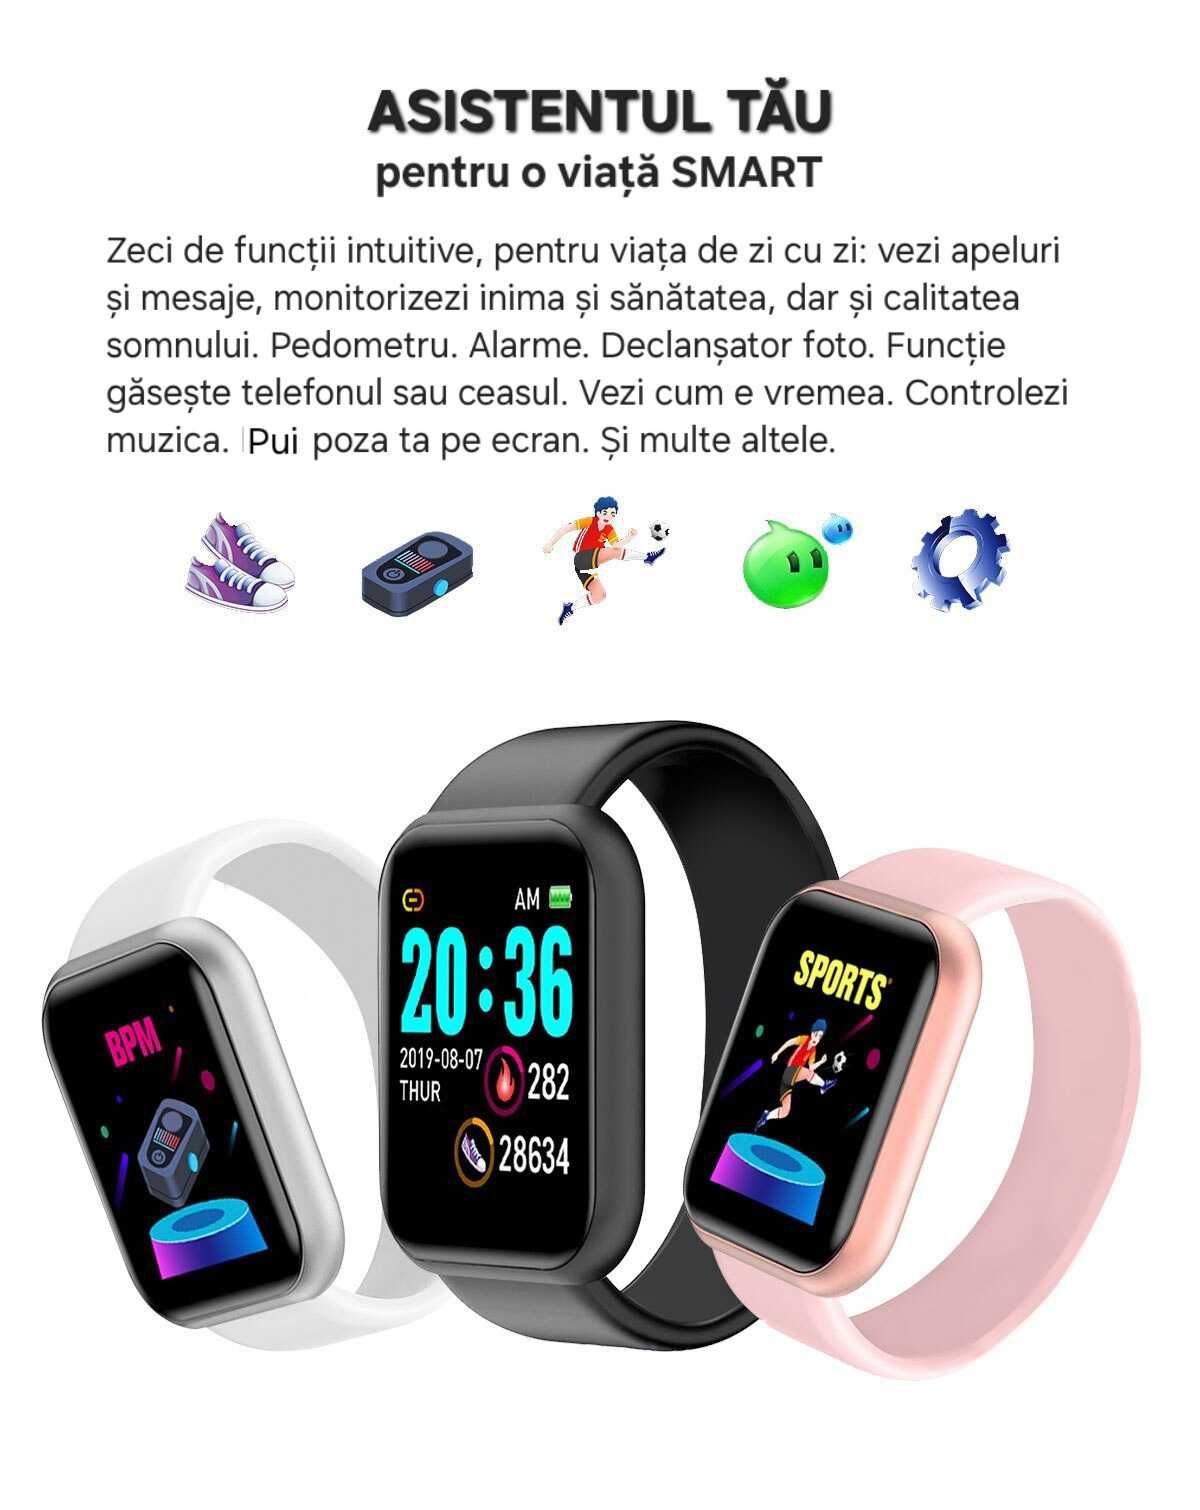 Smartwatch Alb: vezi apeluri/mesaje/notificări. Mod sport/ sănătate